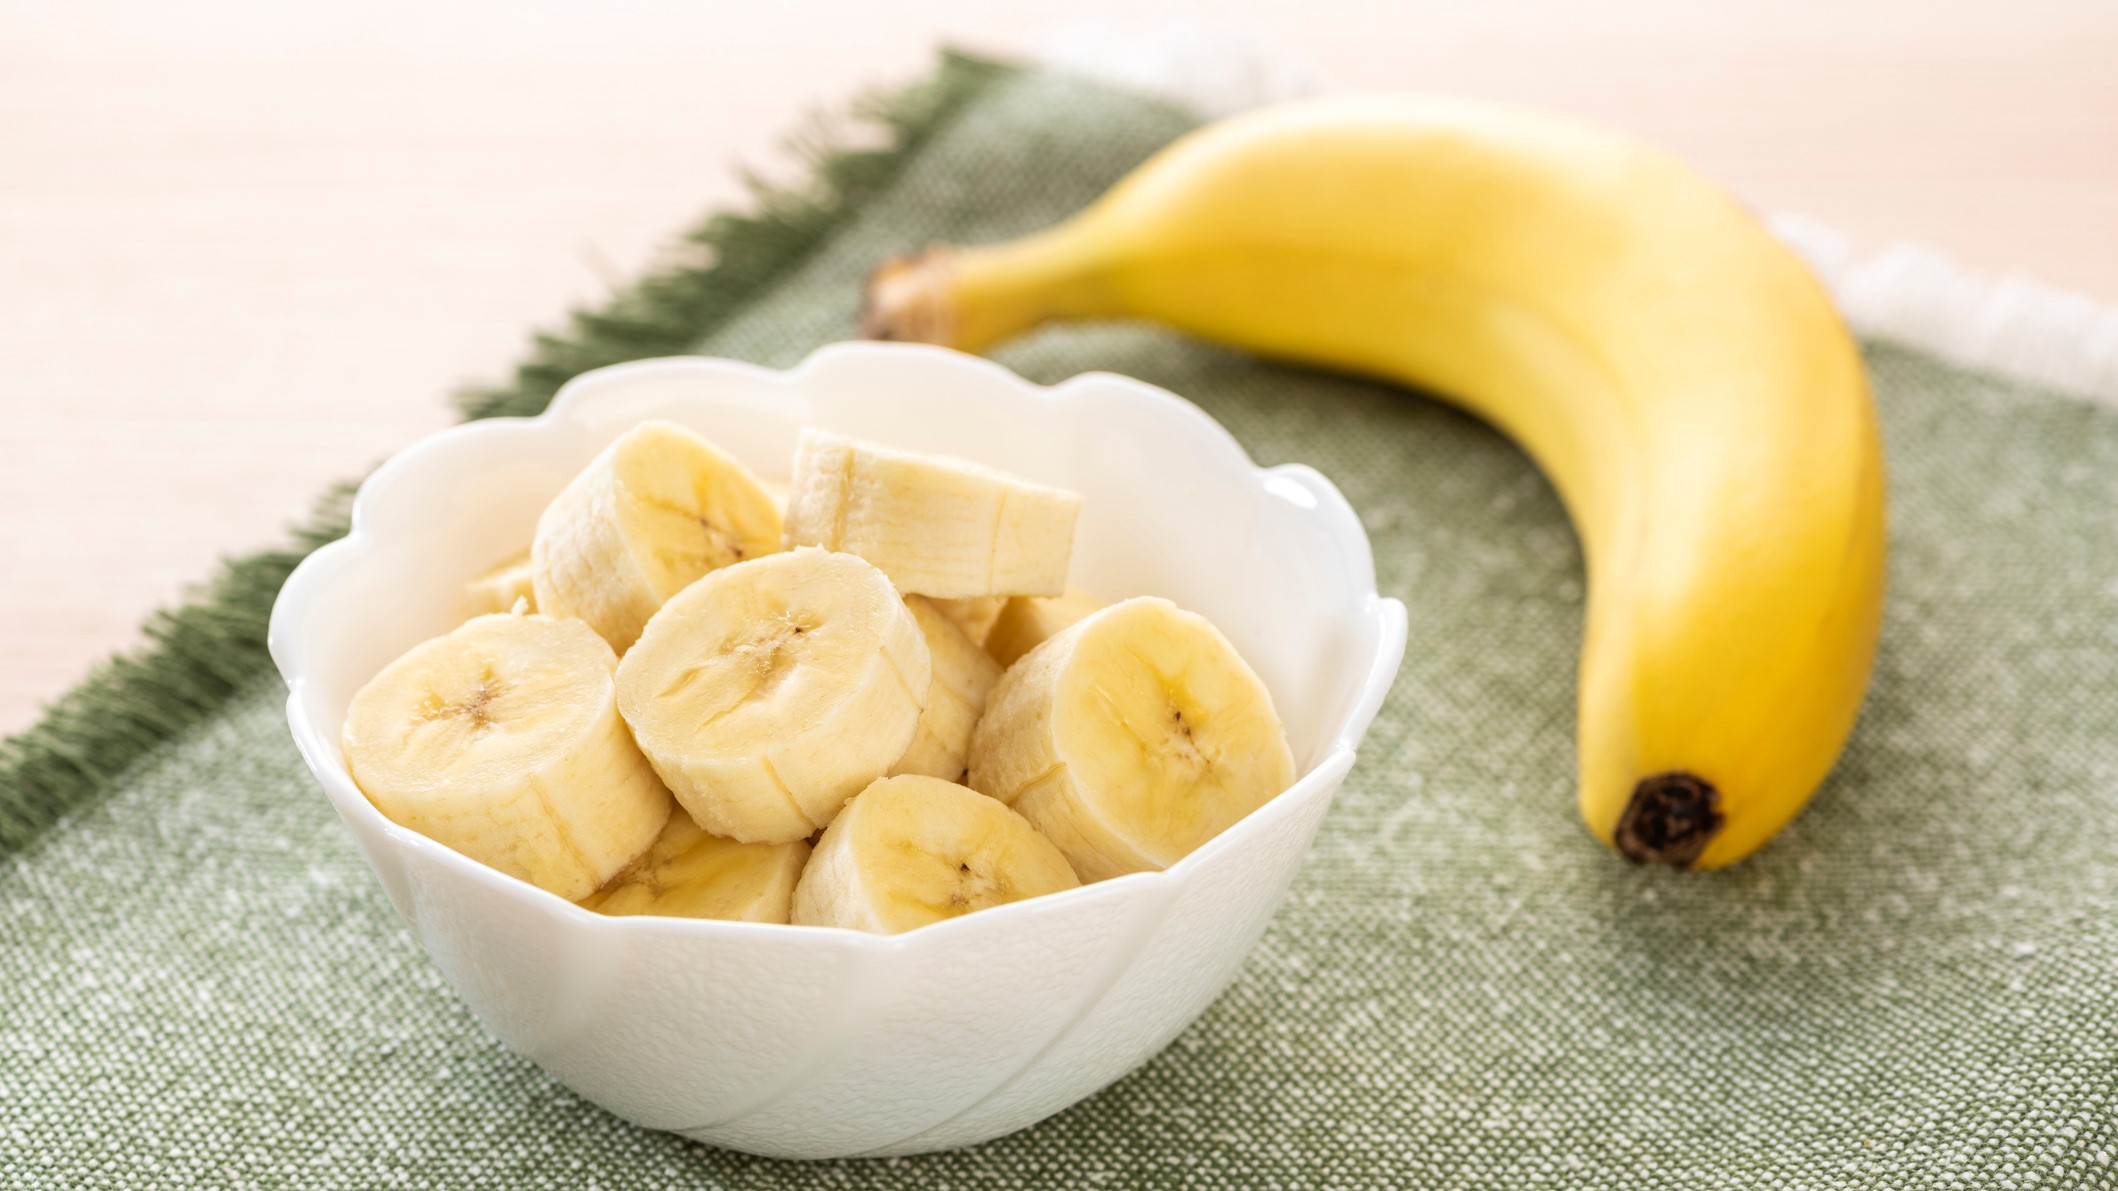 Les bananes regorgent de nutriments et offrent une grande variété de bienfaits pour la santé.